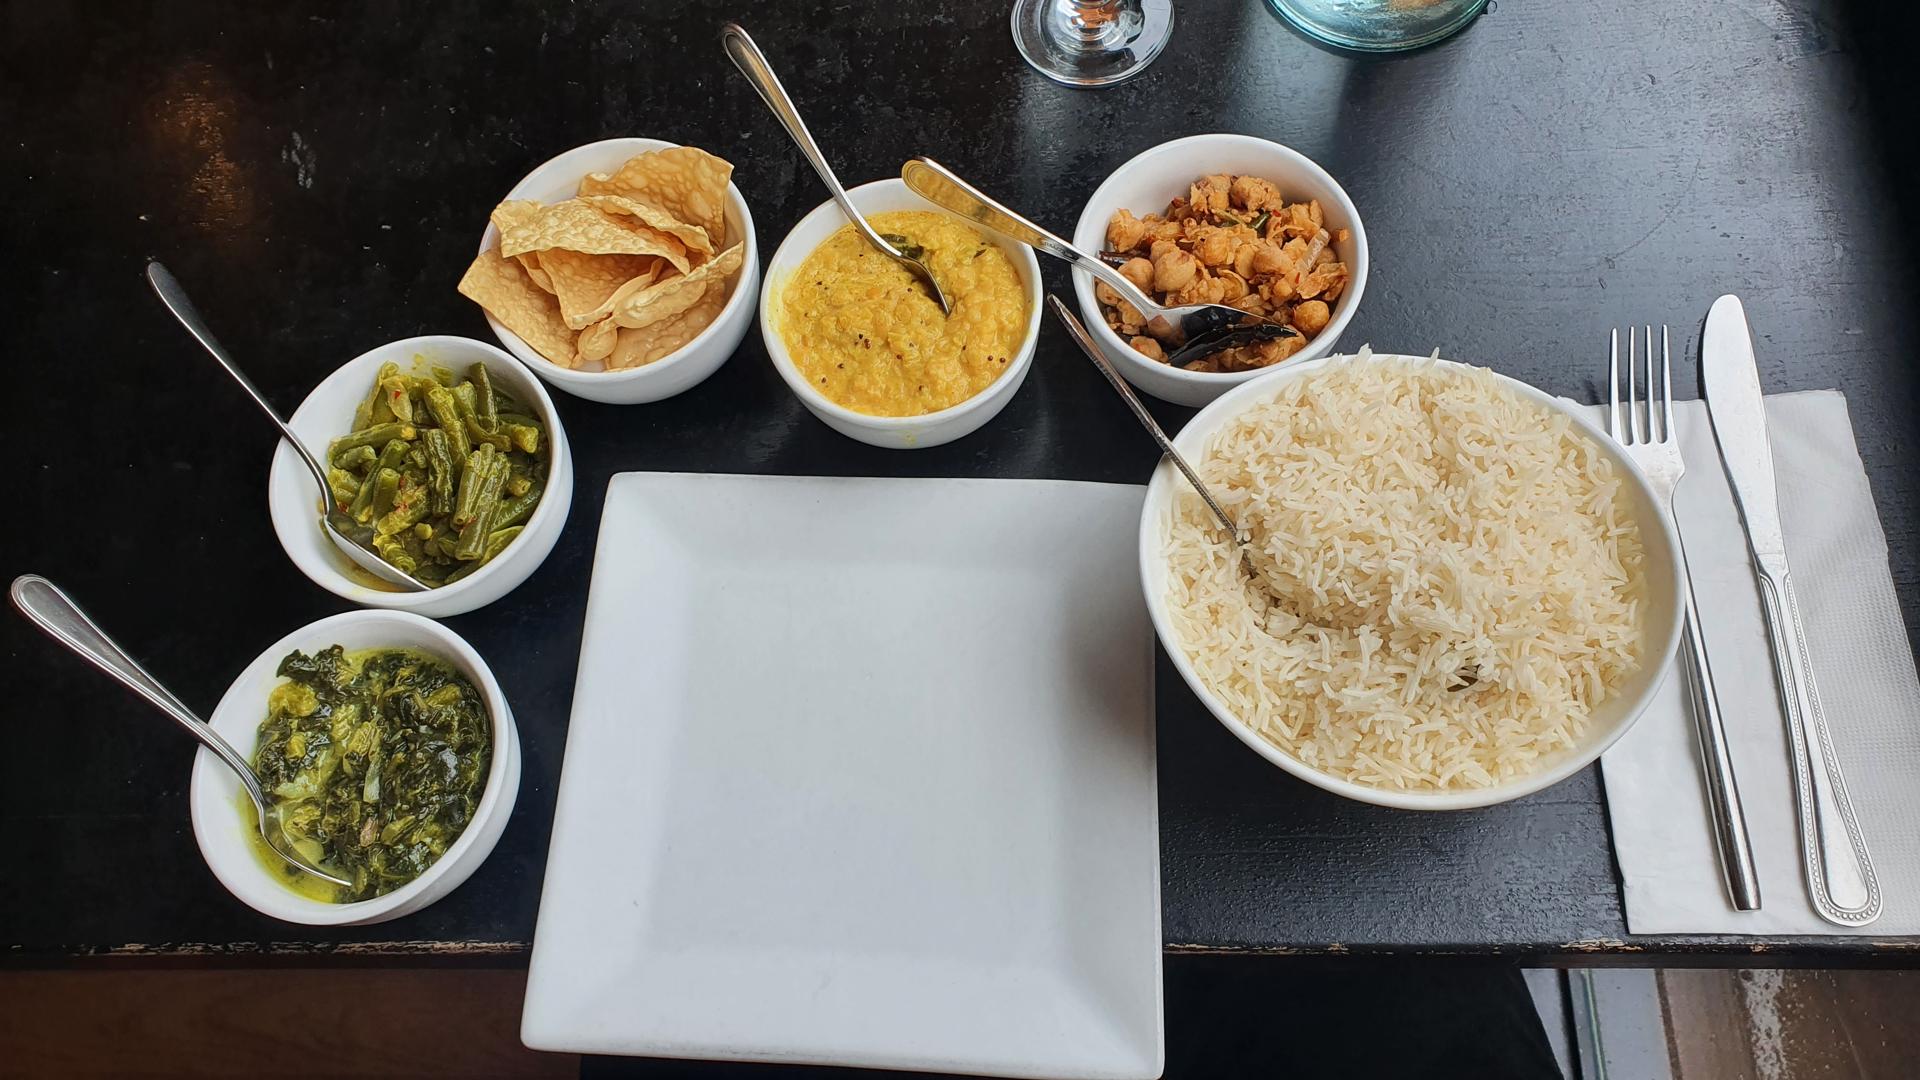 Vegan Sri Lankan food at Sigiri in East Village, New York